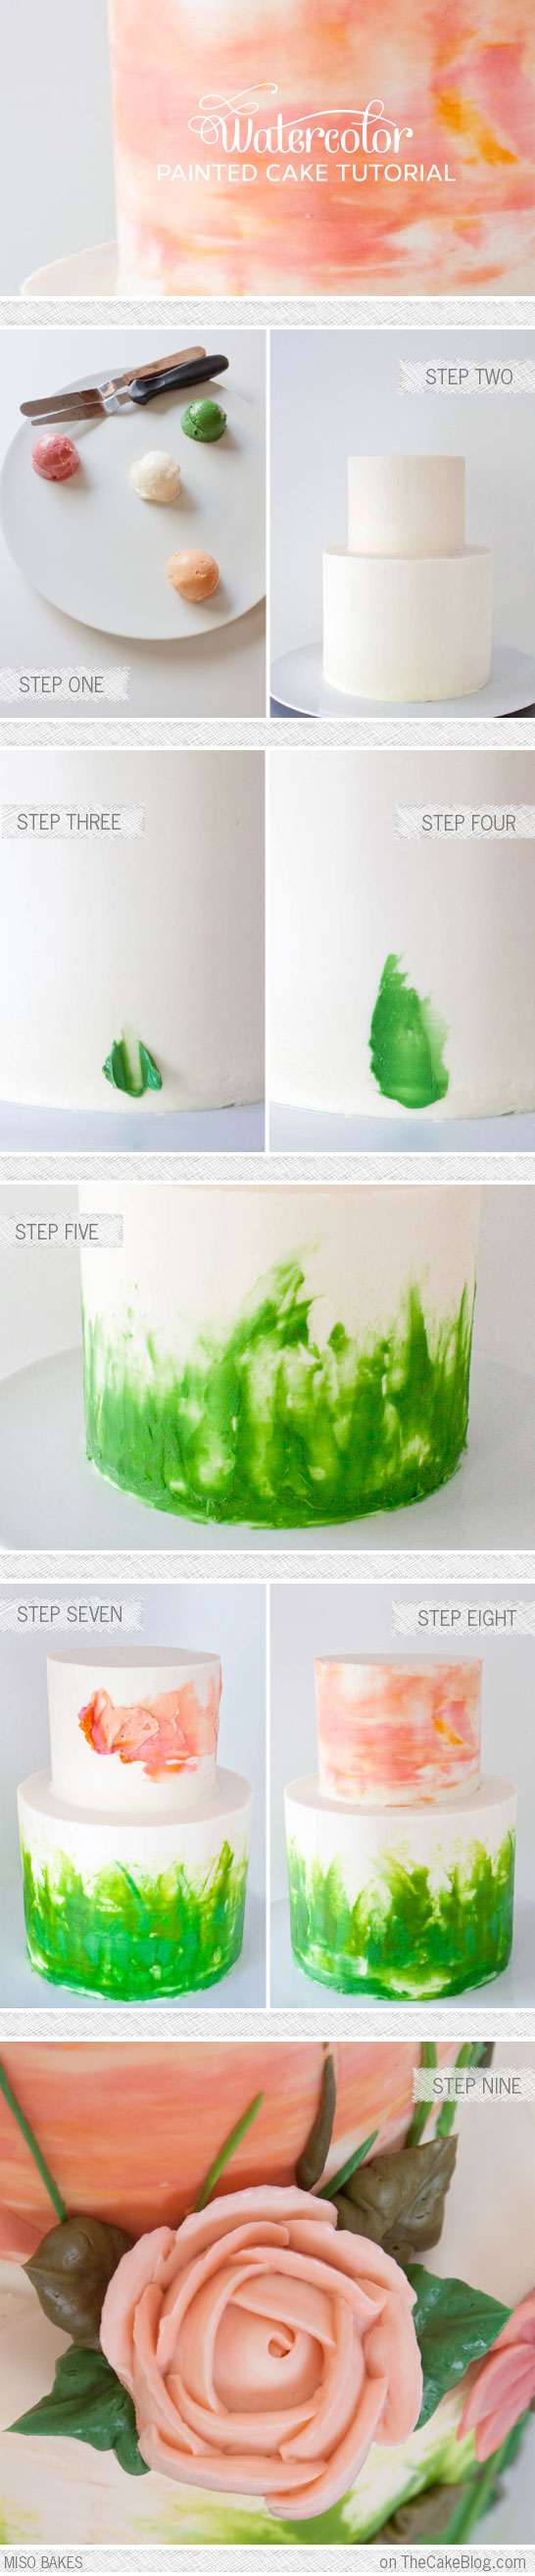 DIY Watercolor Cake Tutorial by Miso Bakes  |  TheCakeBlog.com